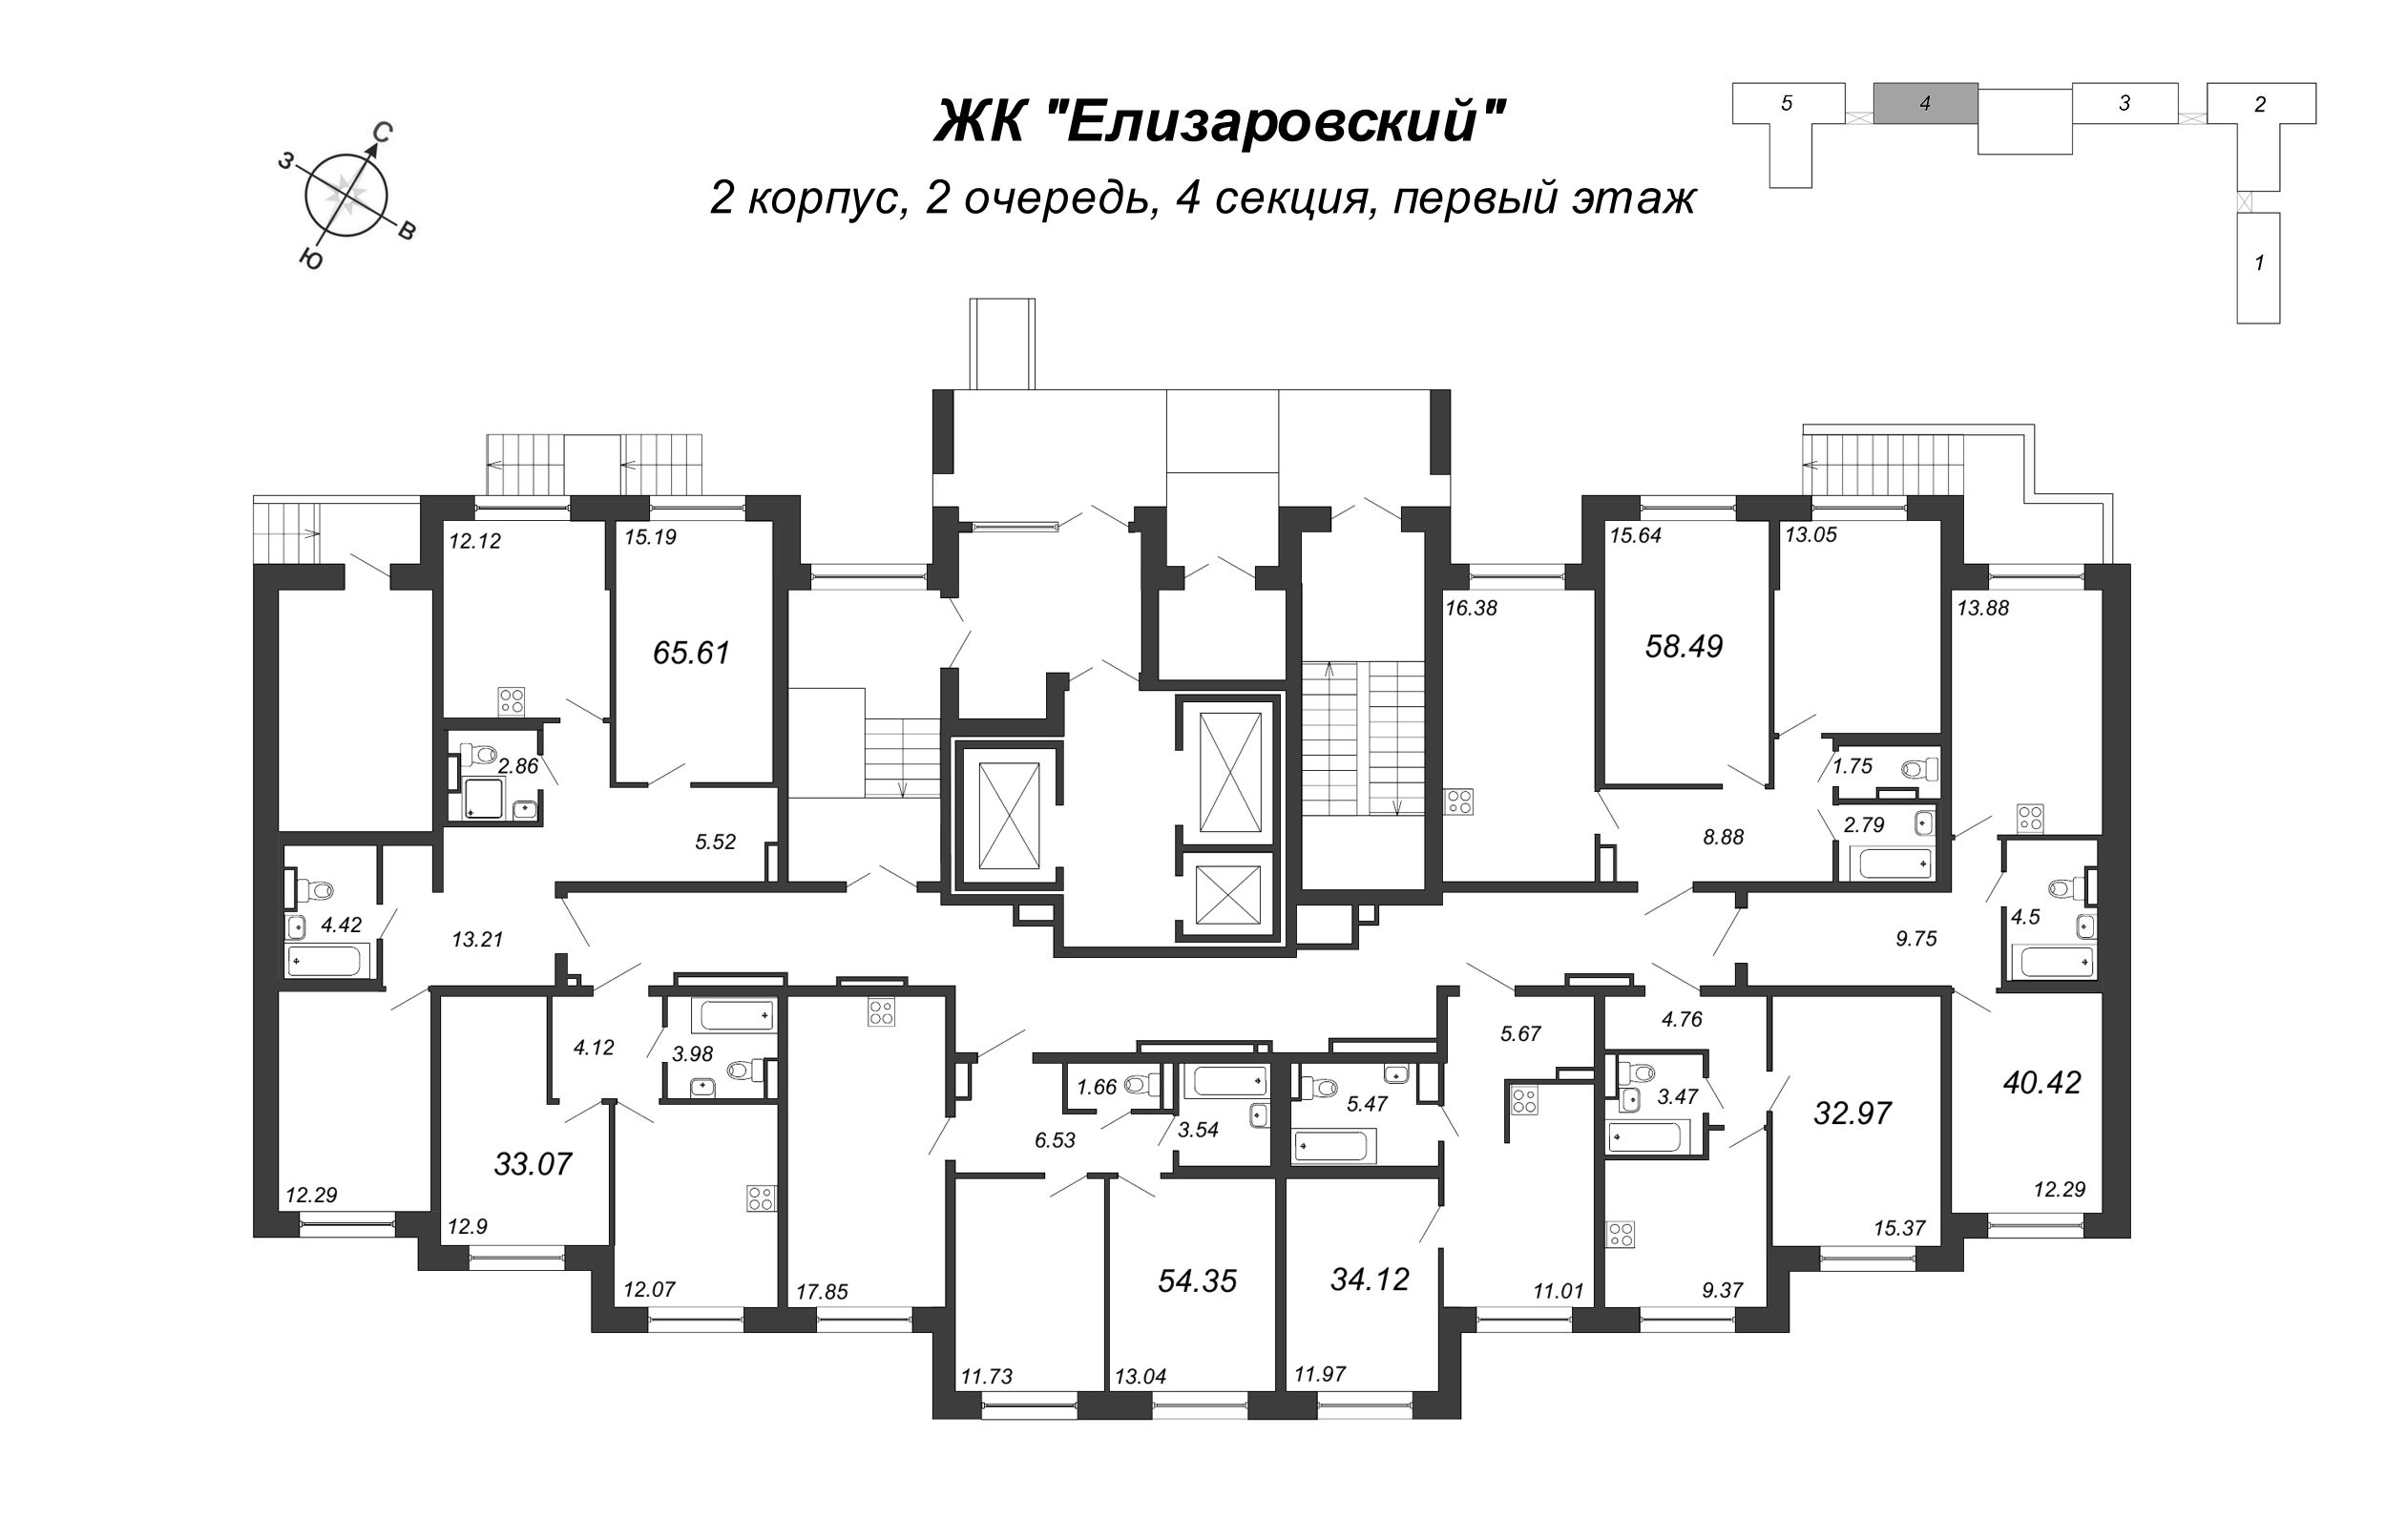 2-комнатная (Евро) квартира, 40.42 м² в ЖК "Елизаровский" - планировка этажа